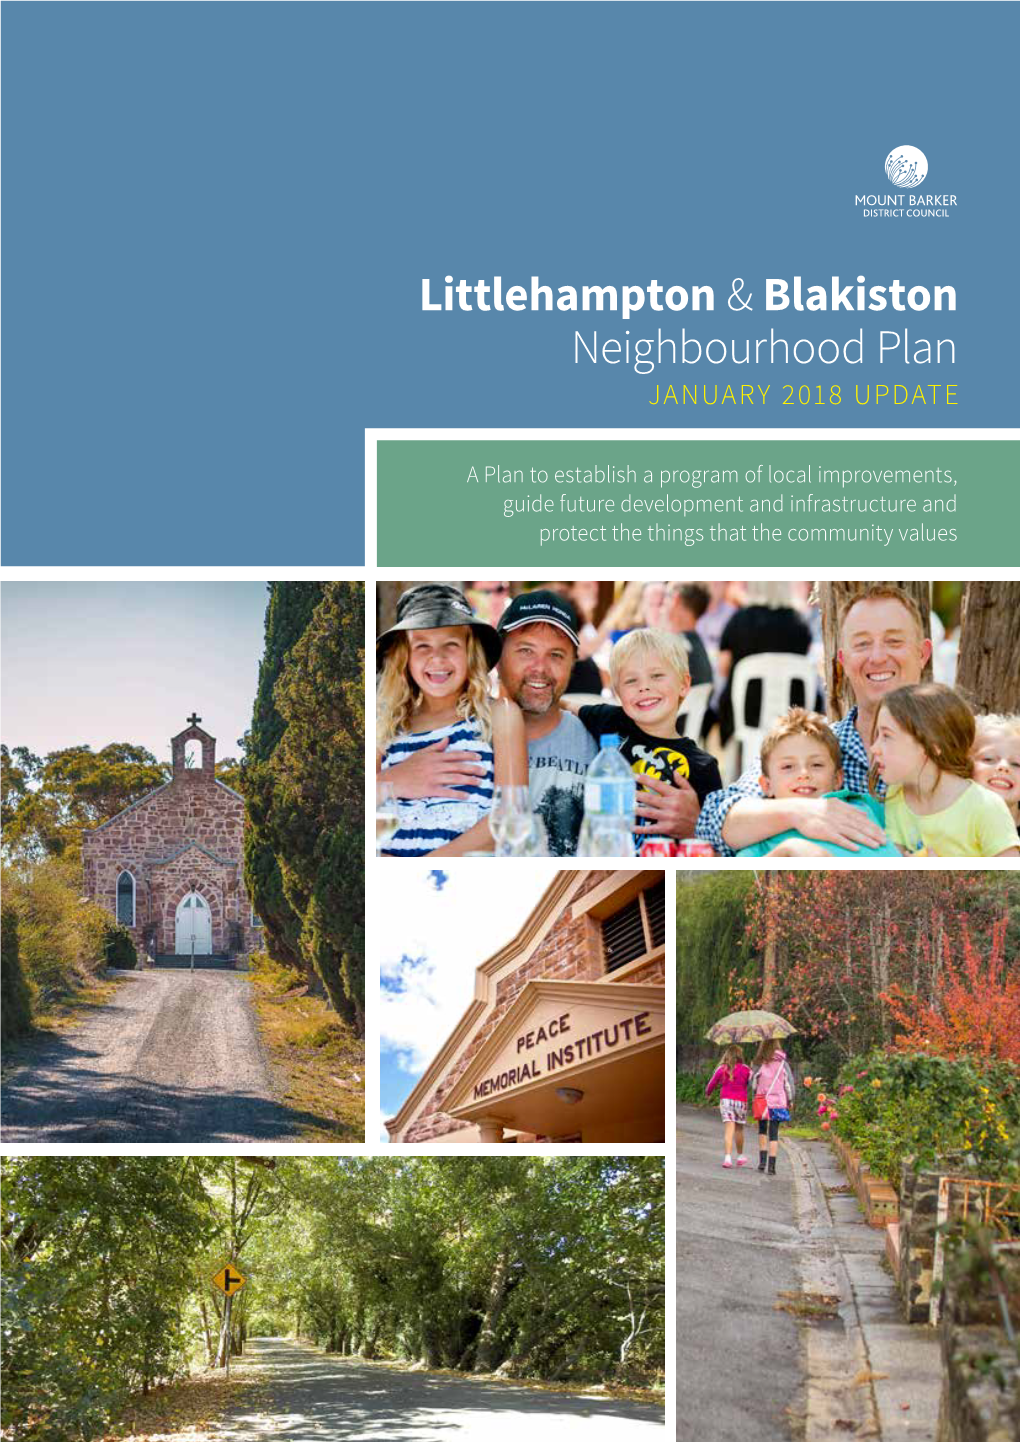 Littlehampton & Blakiston Neighbourhood Plan